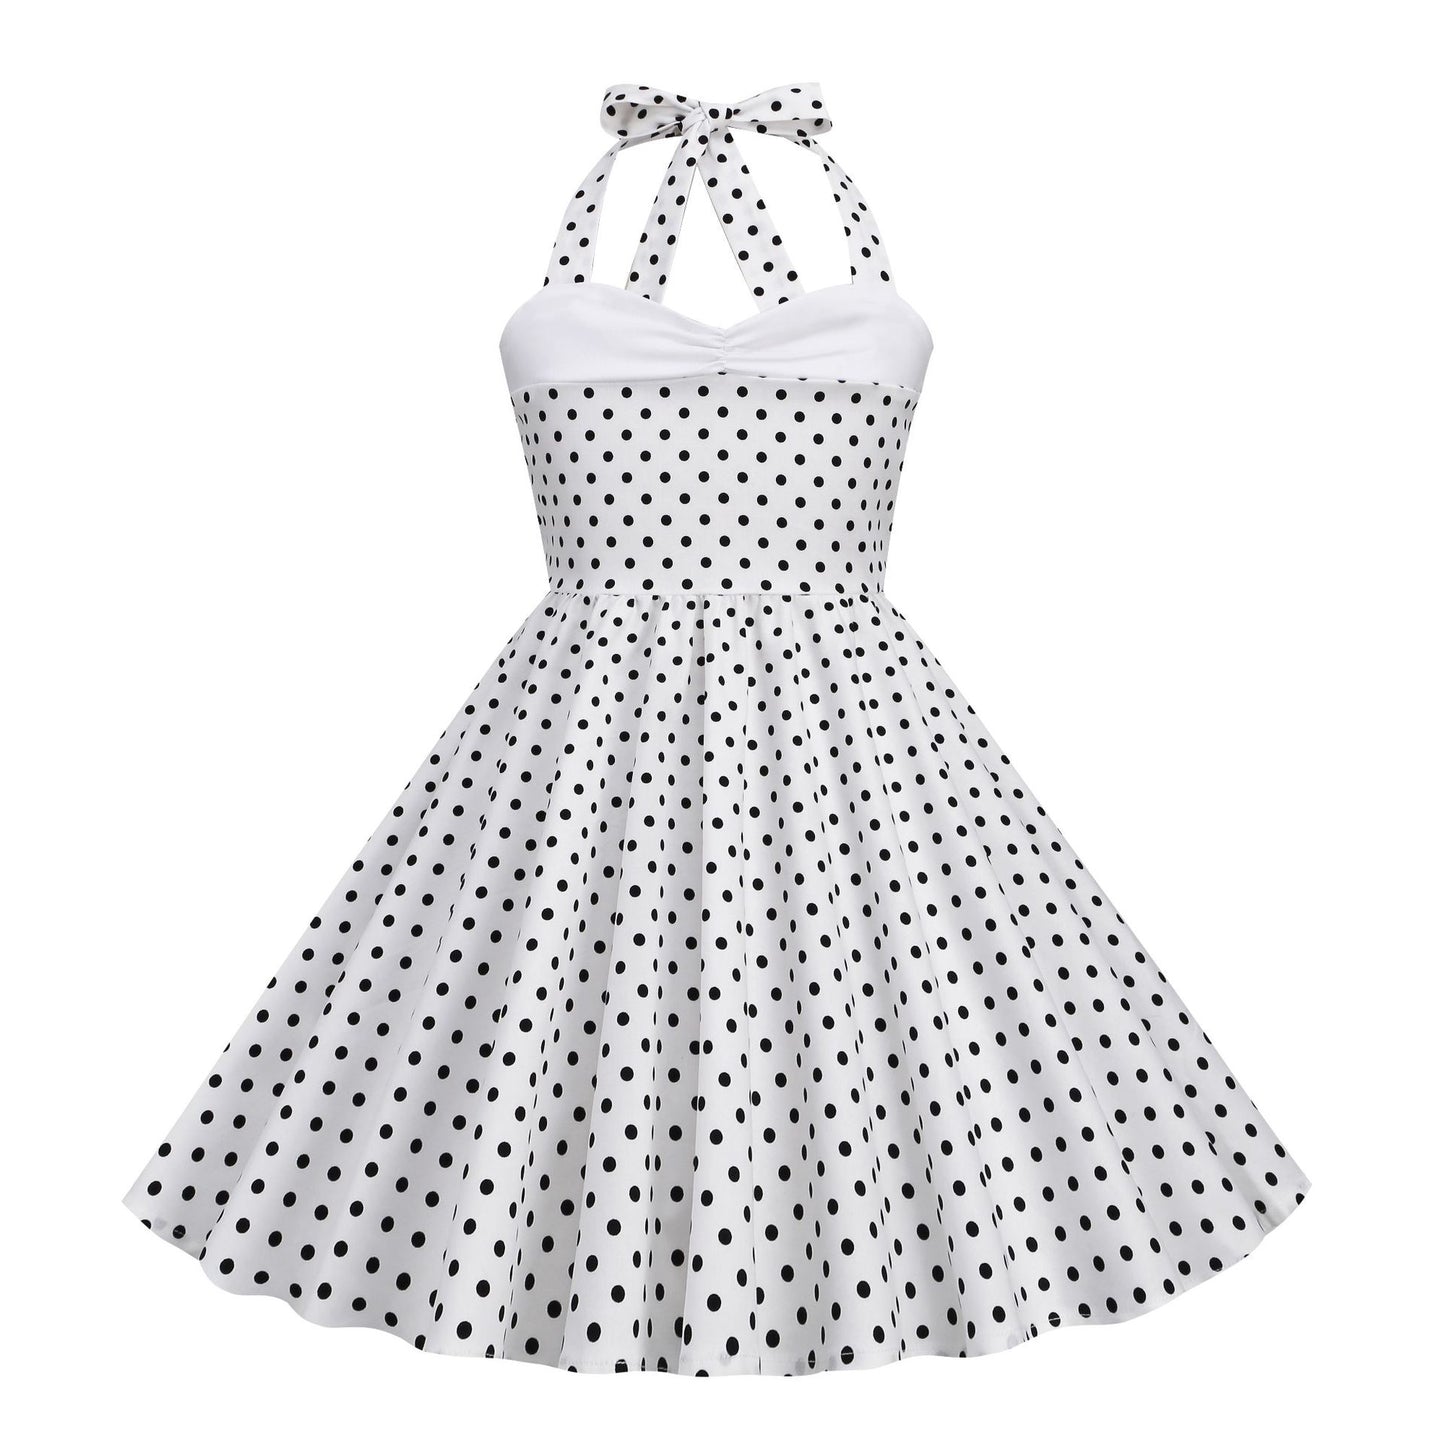 Vintage Dot Print Halter Dresses for Kids